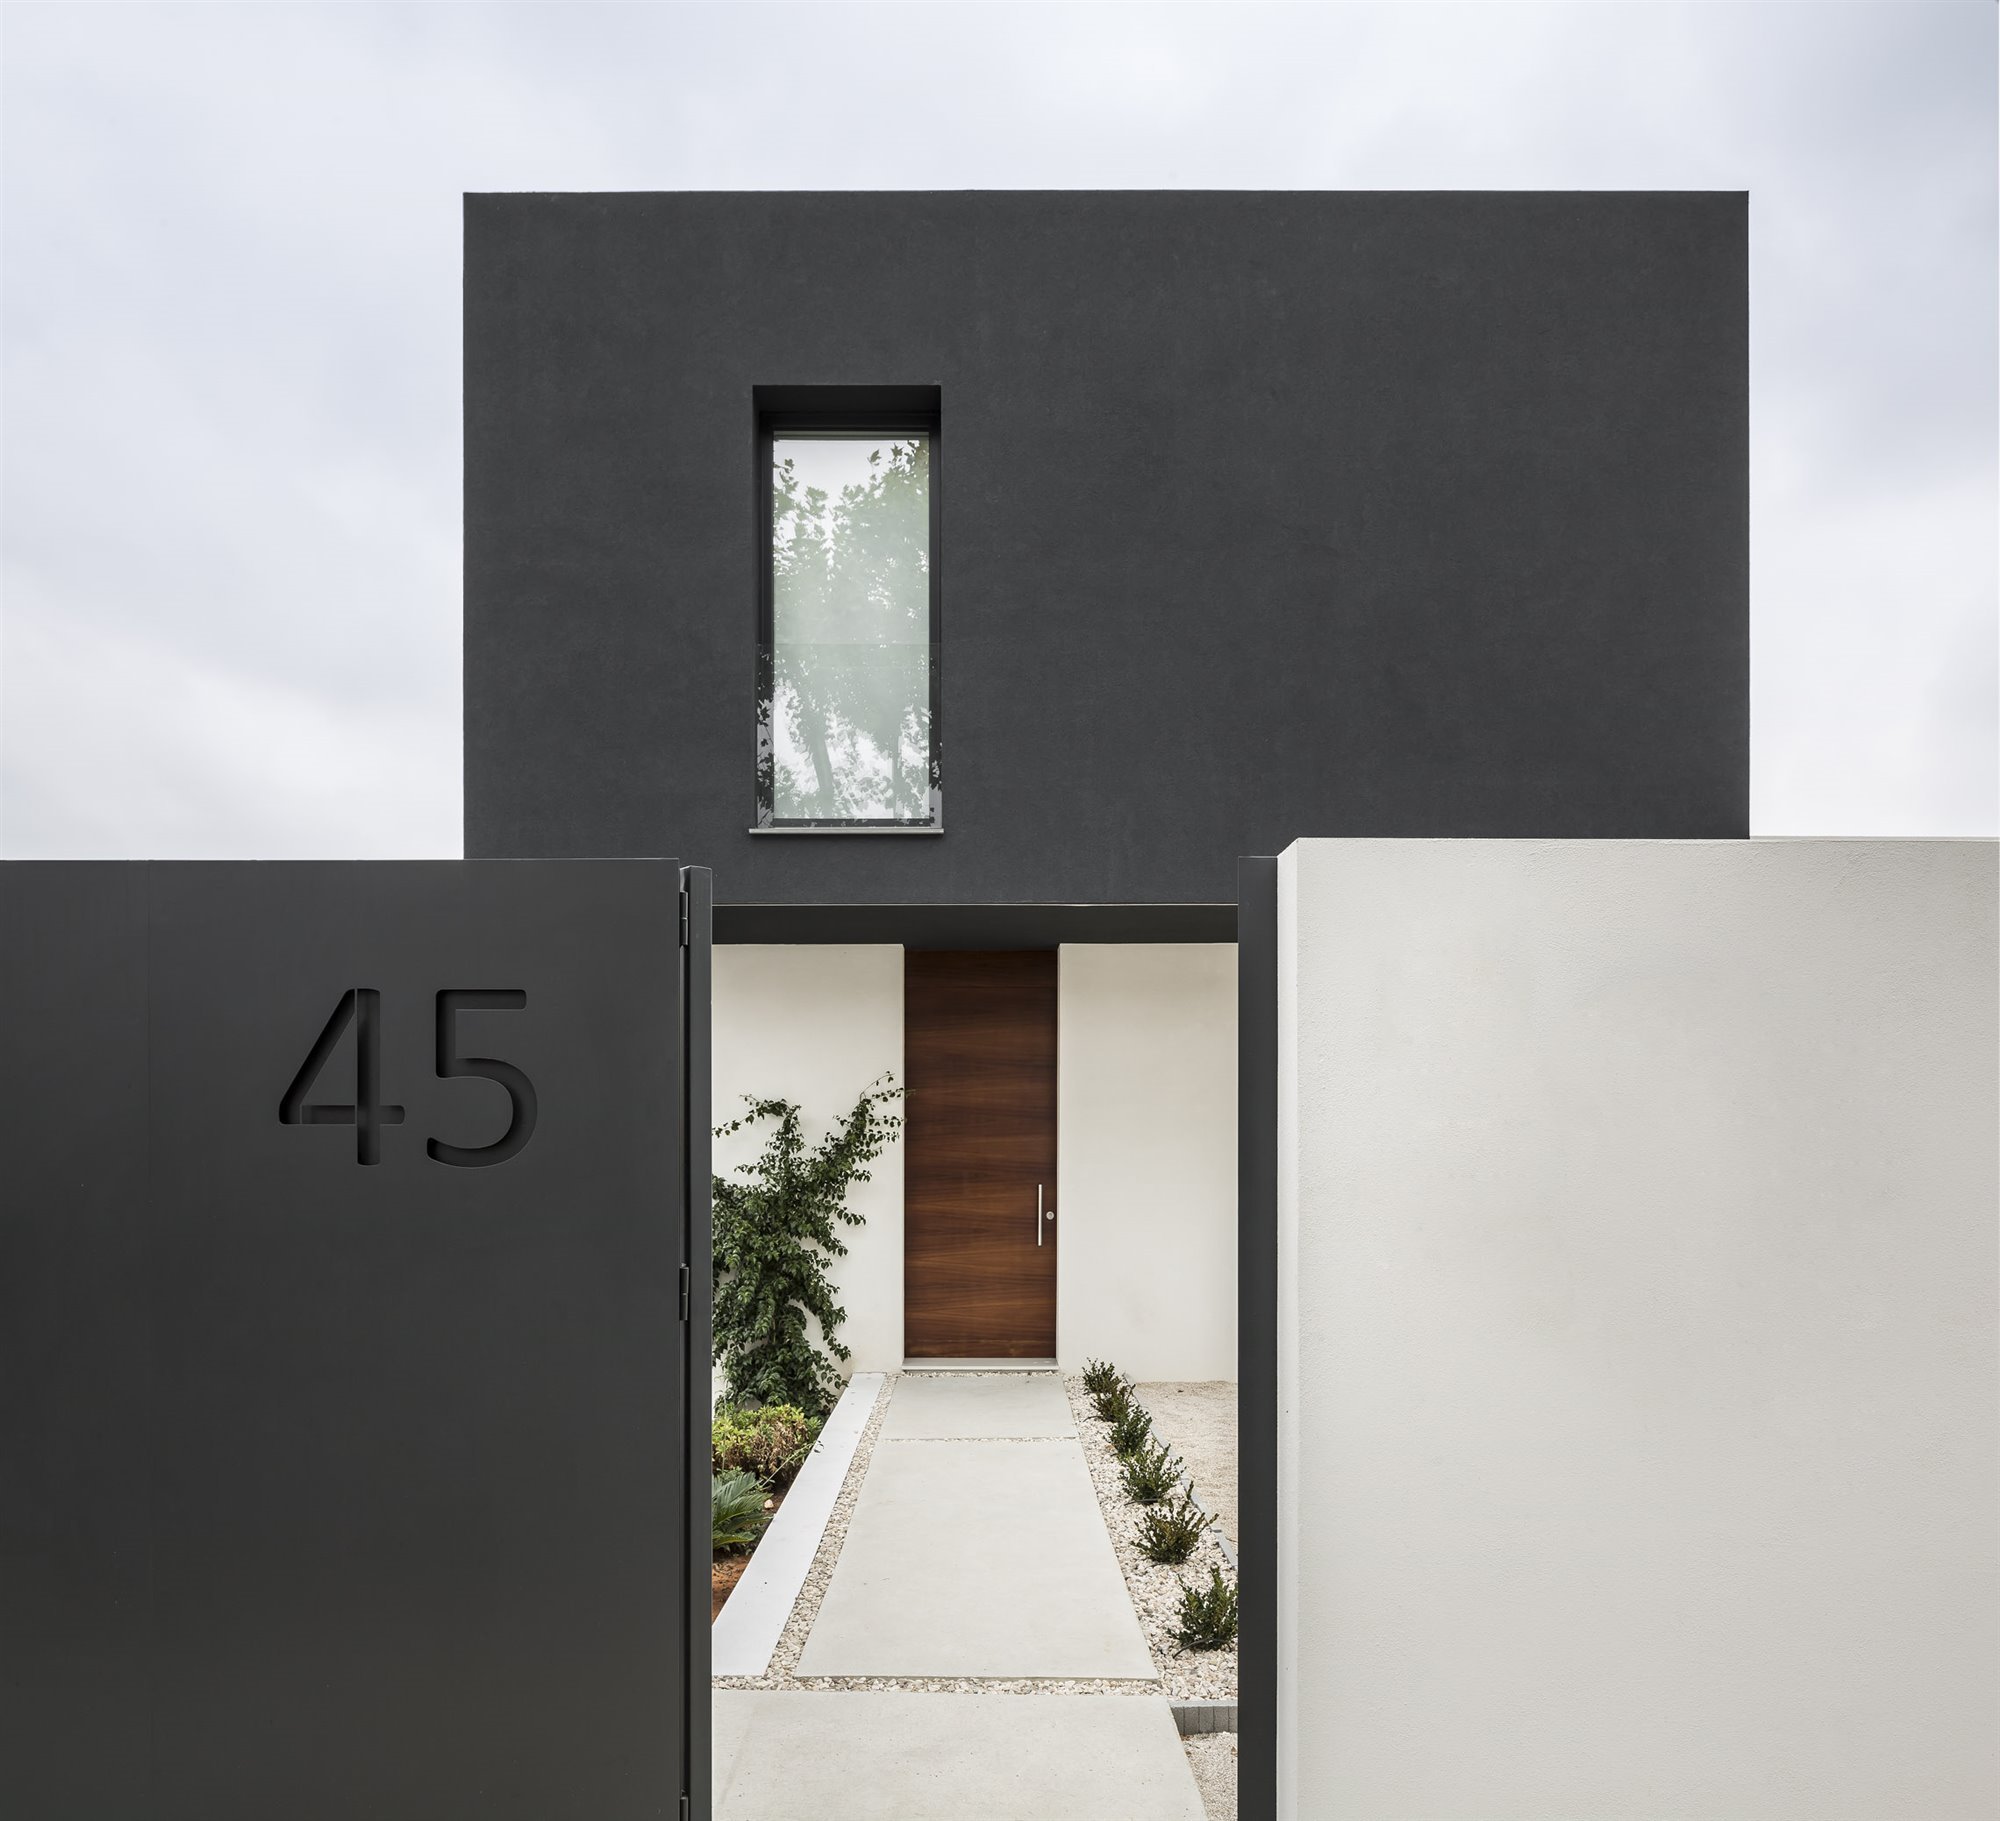 Casa moderna con fachada en blanco y negro en Valencia puerta entrada